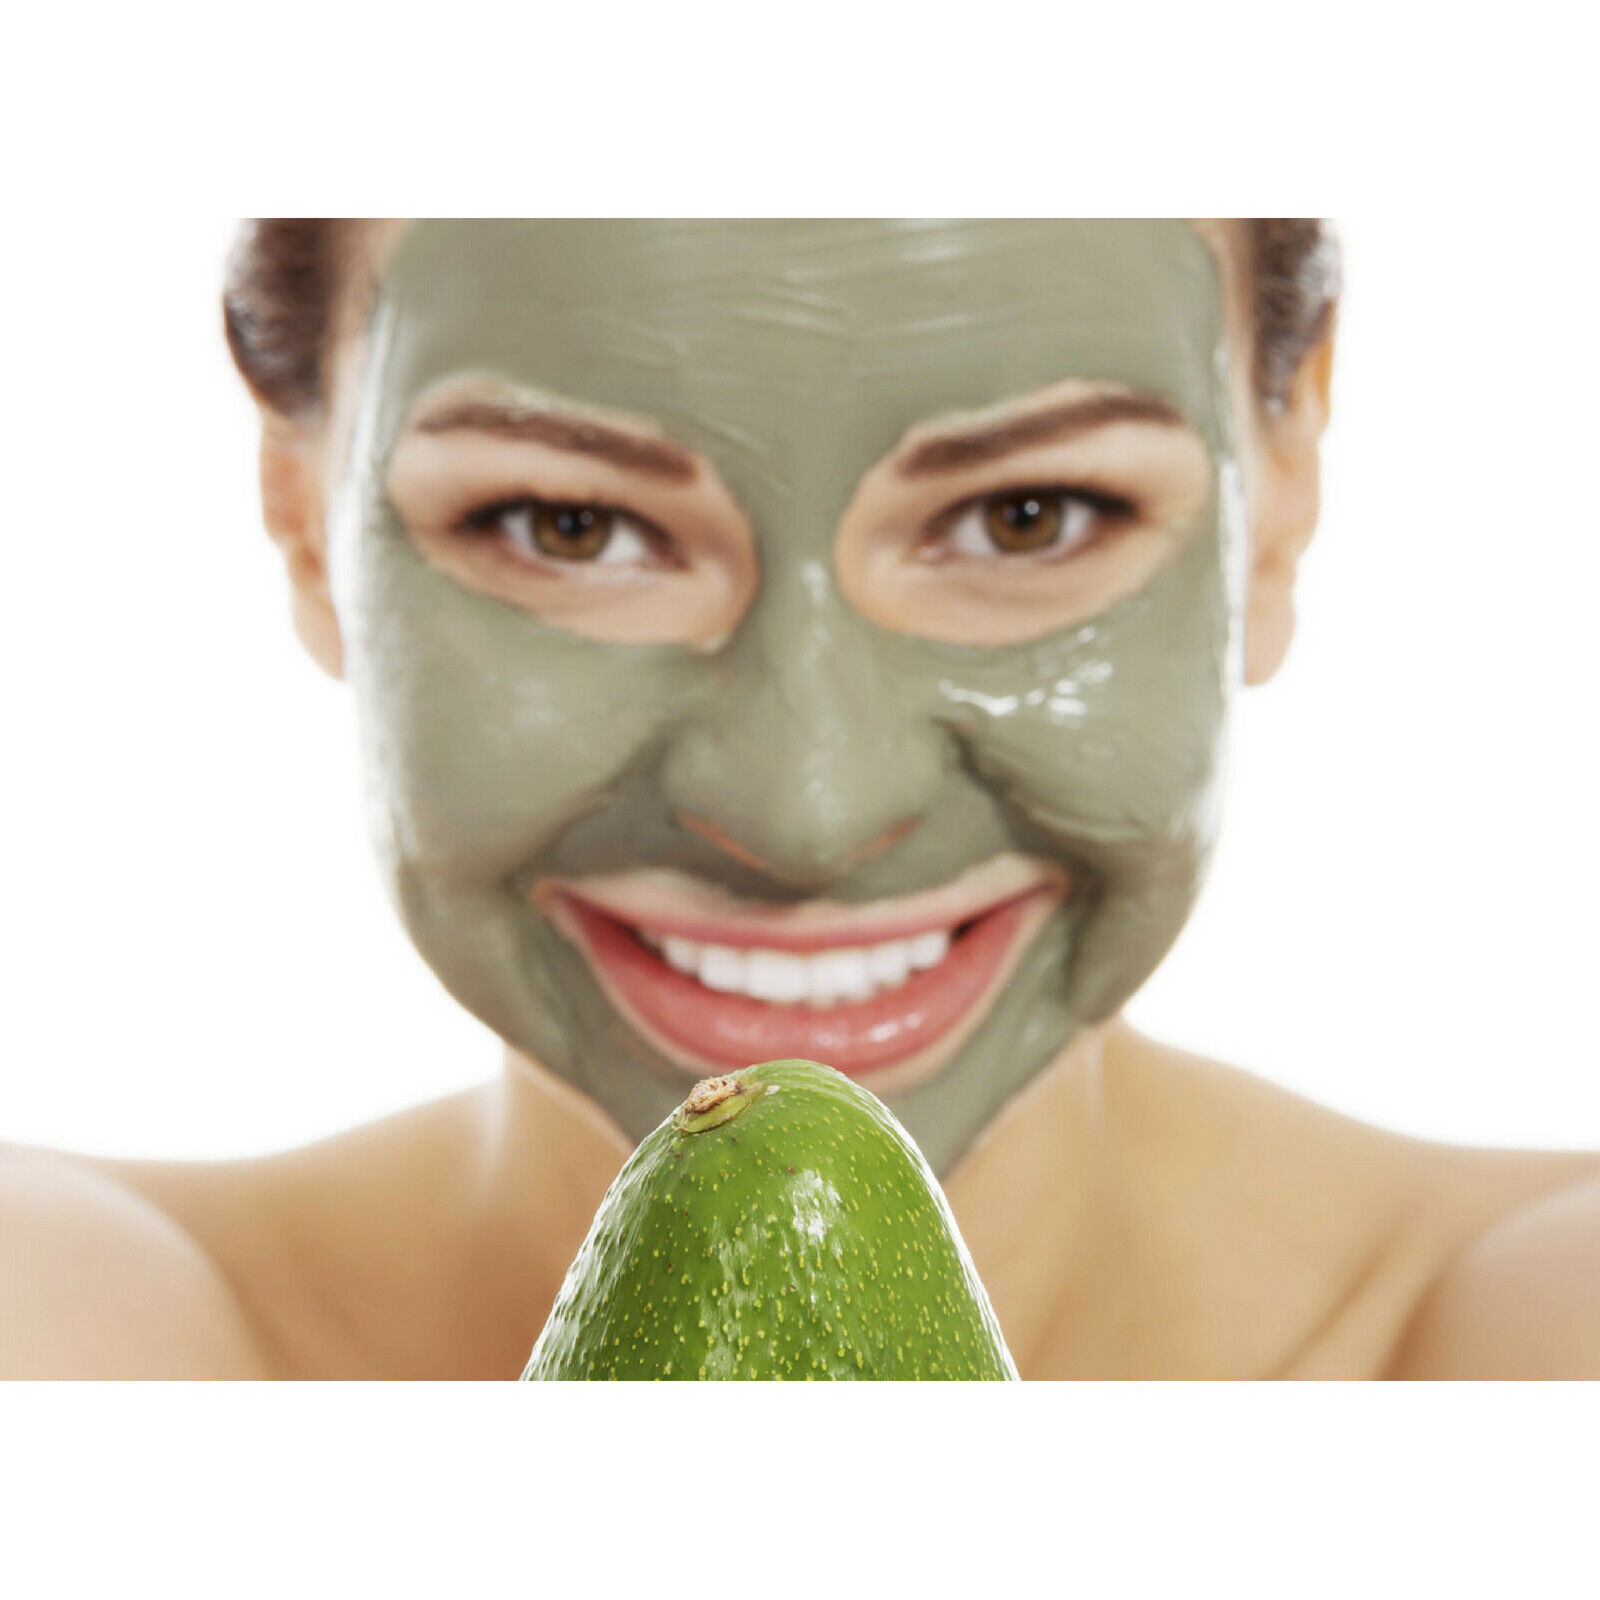 Маски для лица рейтинг 10. Маска для лица. Женщина в косметической маске. Девушка с маской на лице. Маска для лица/зеленая.